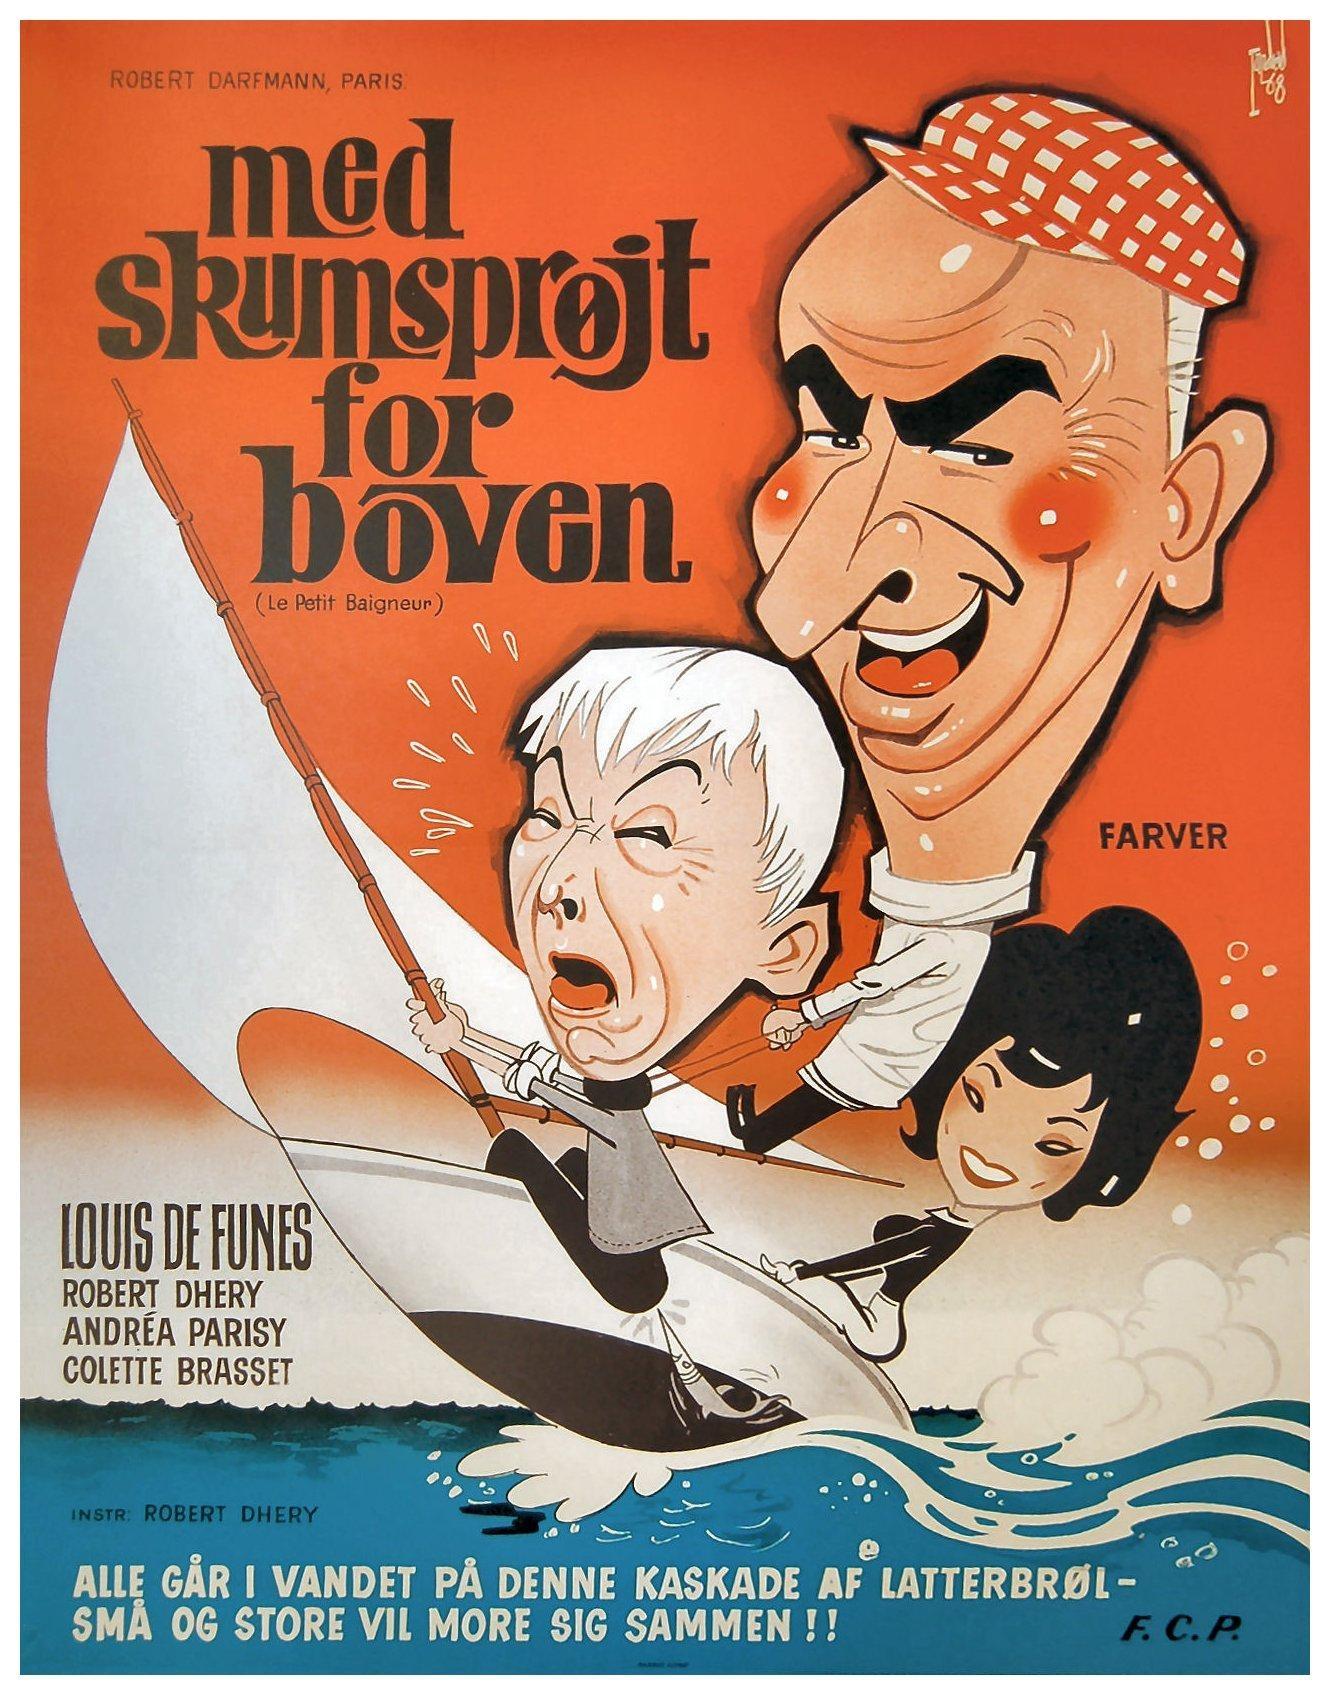 Постер фильма Маленький купальщик | petit baigneur